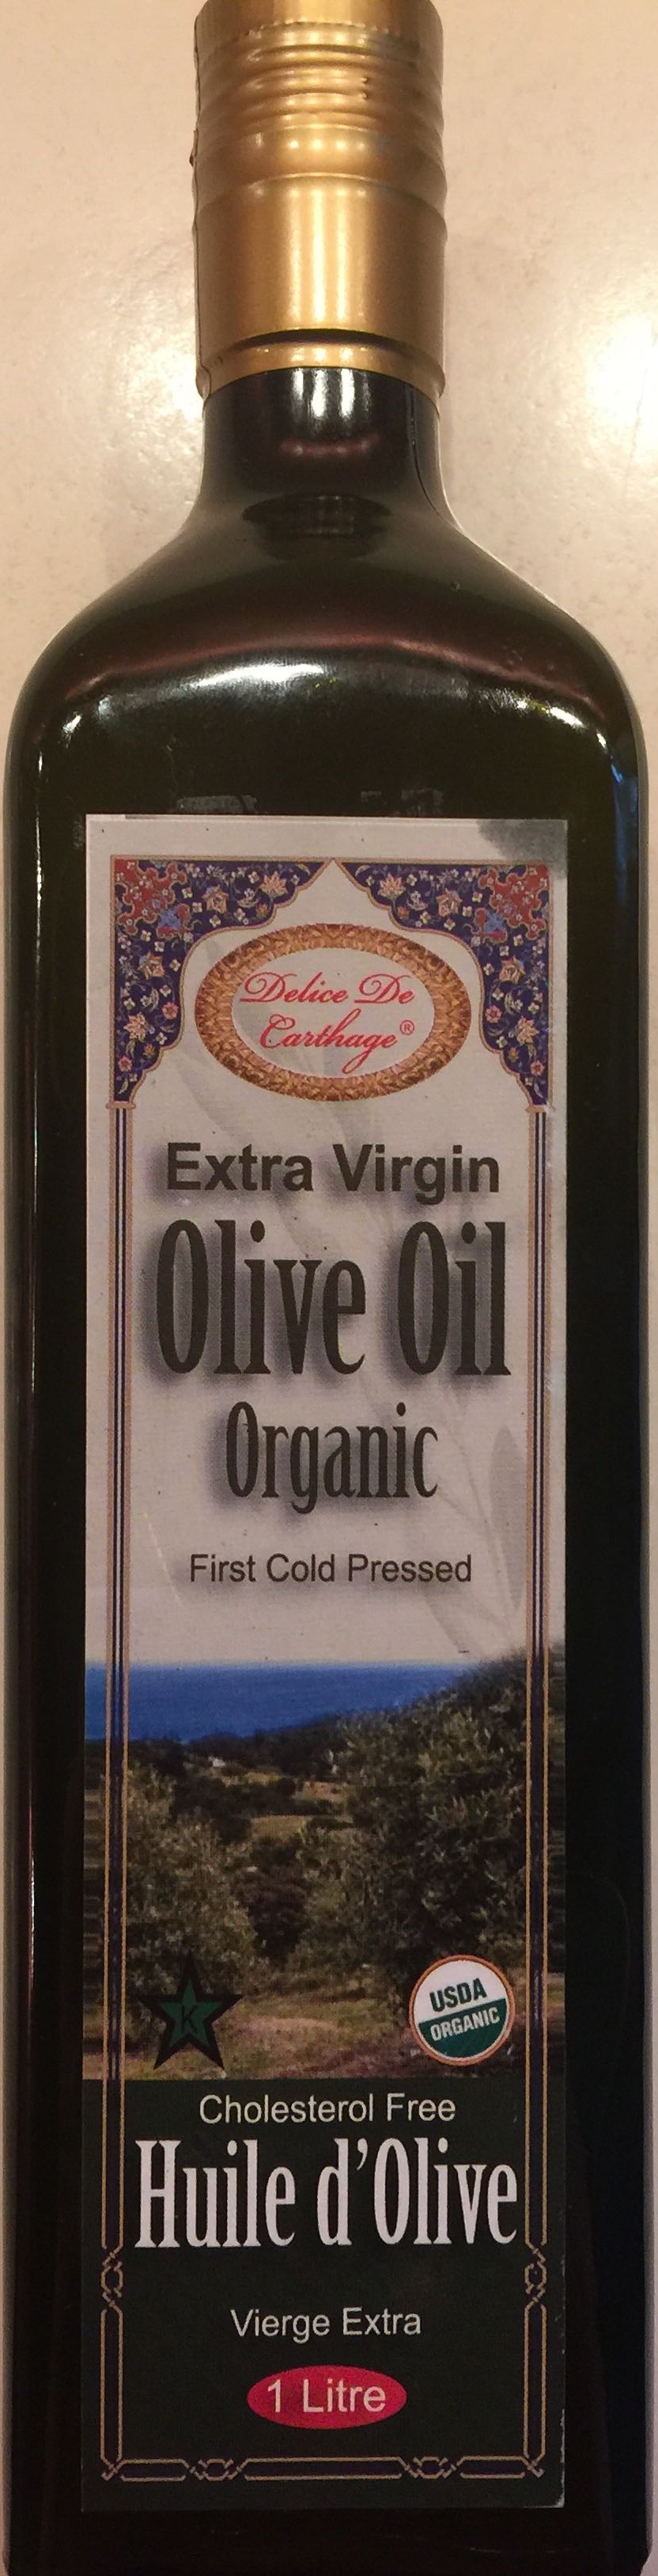 Extra Virgin Olive Oil - Produkt - en